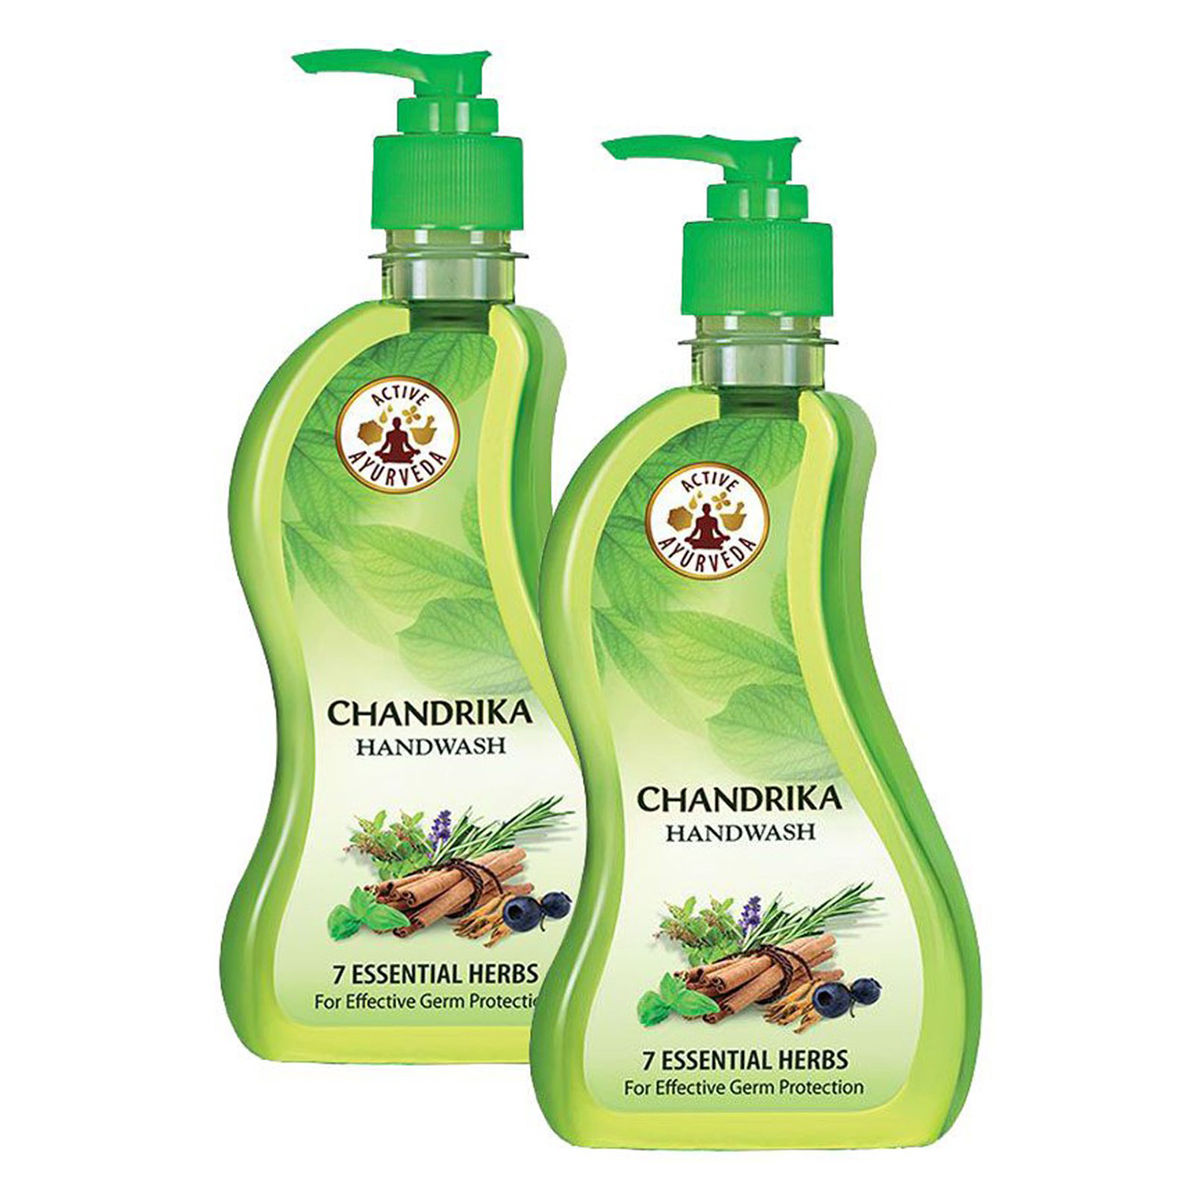 Chandrika Handwash, 430 ml (2 x 215 ml), Pack of 1 